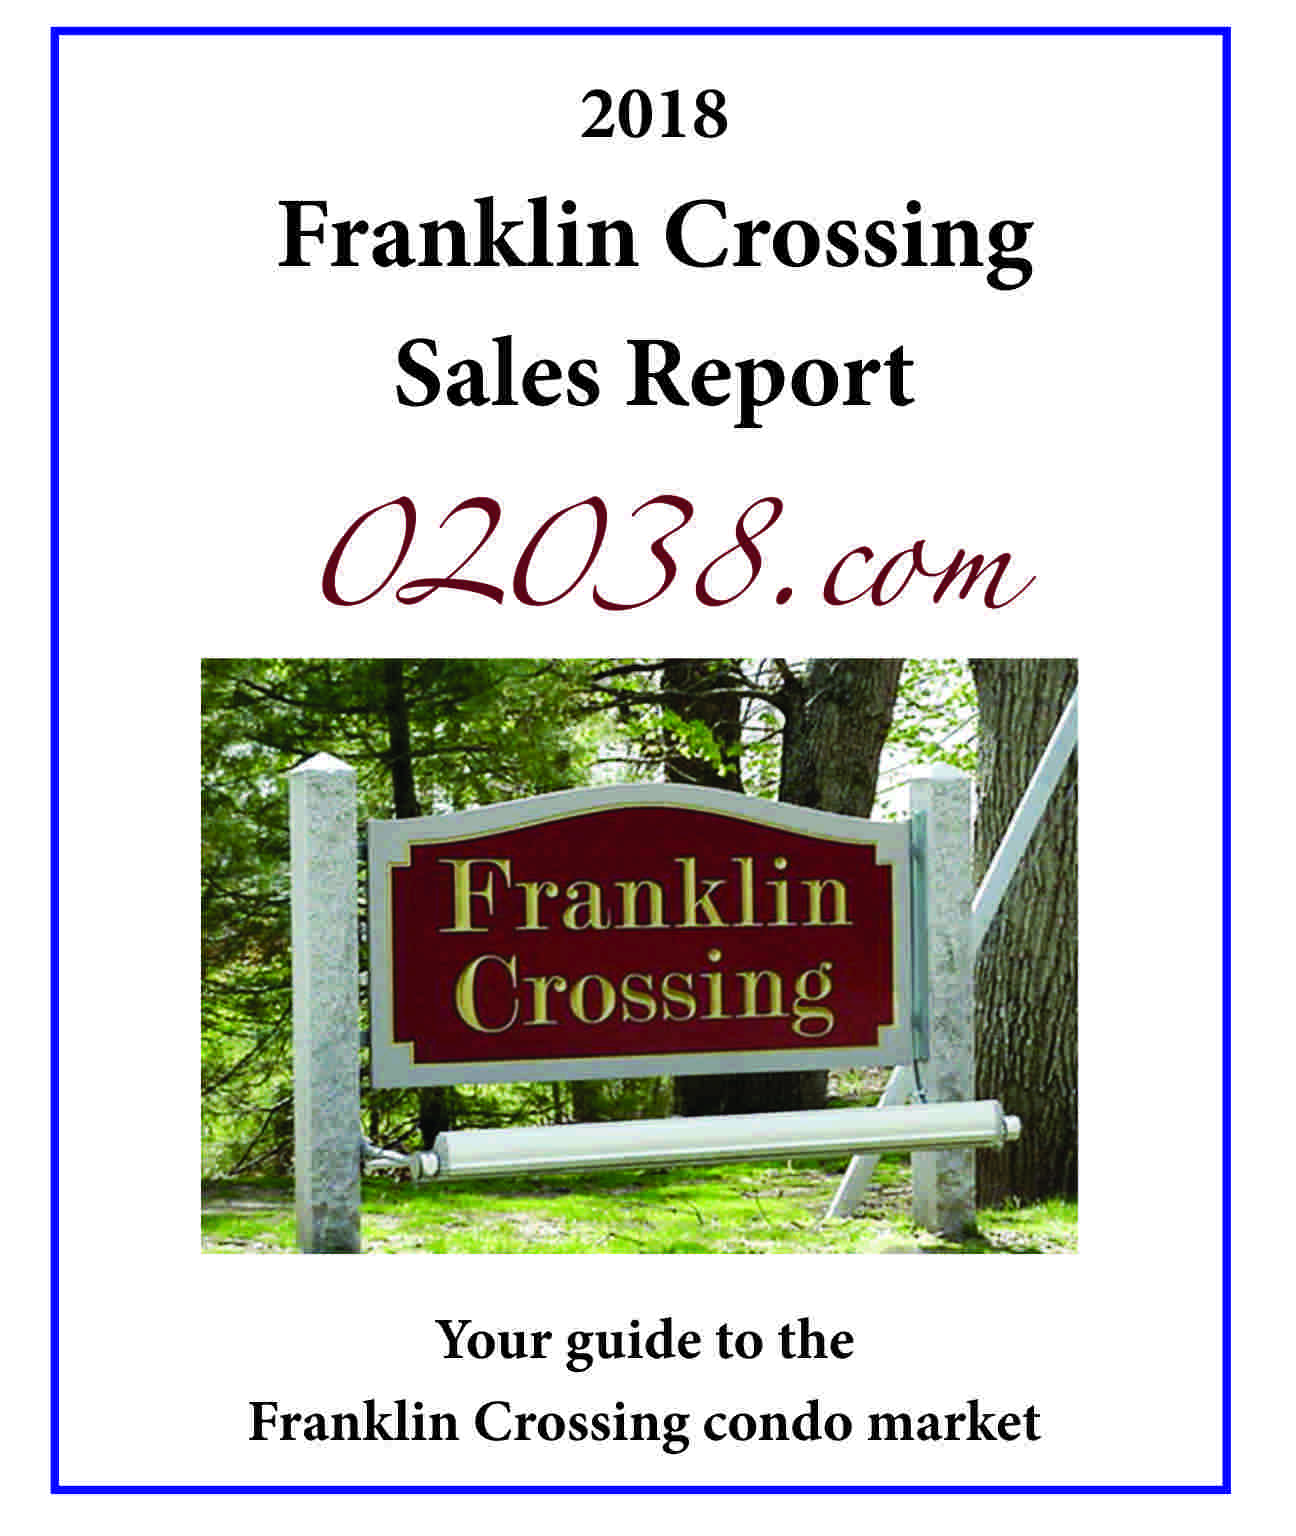 ranklin Crossing Condos Franklin MA sales report 2018 